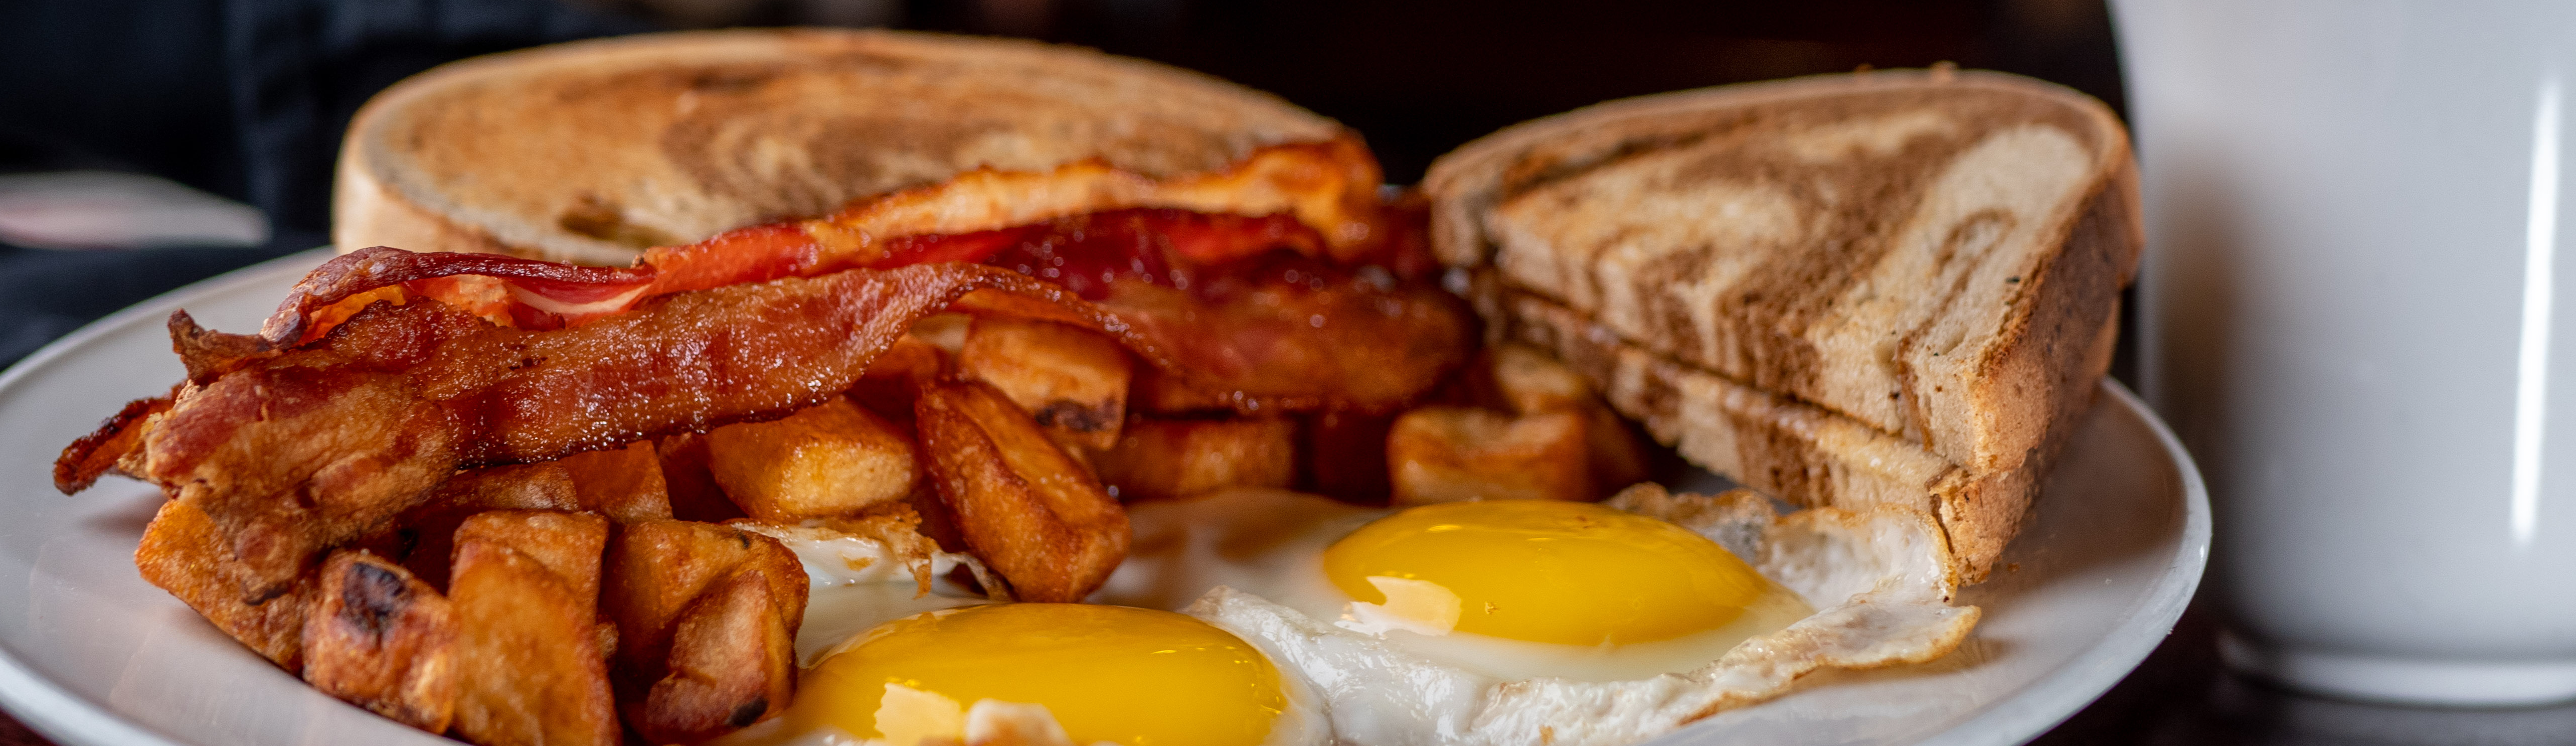 Breakfast & Brunch, Morning Menu at Doc Magilligan's in Niagara Falls